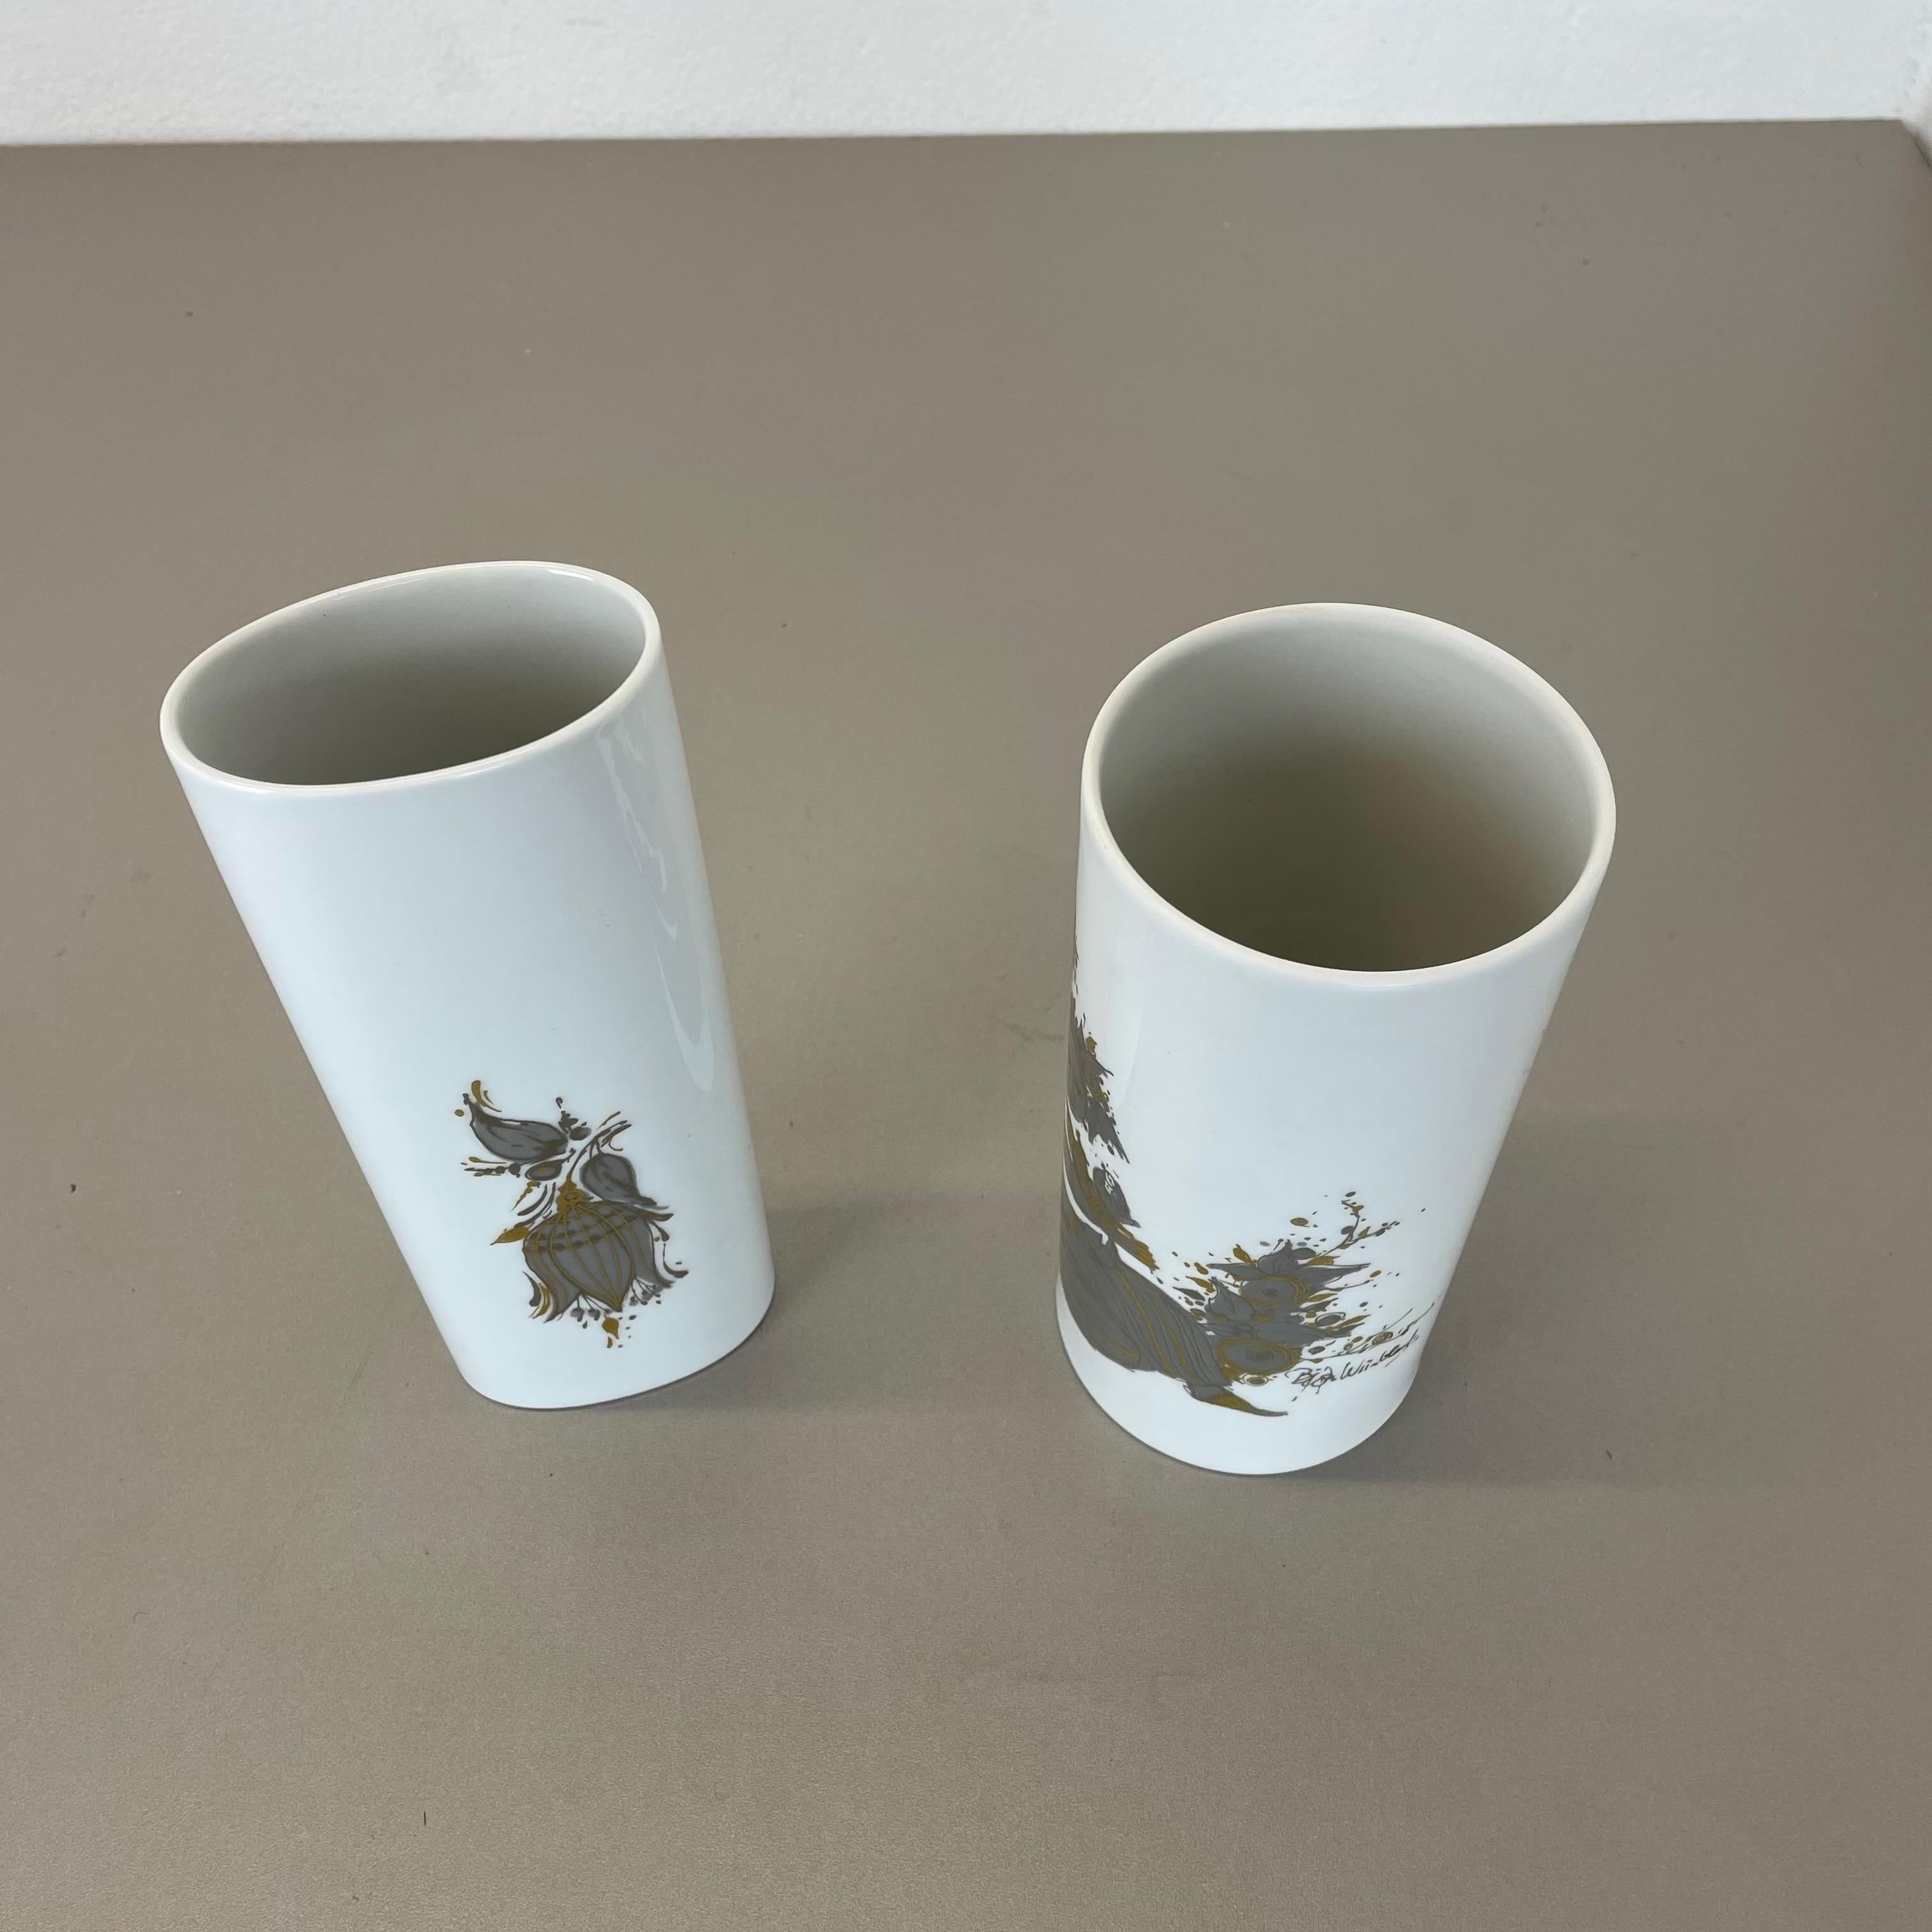 Set of 2 Porcelain Vase by Björn Wiinblad for Rosenthal Studio Line Germany 1970 For Sale 7